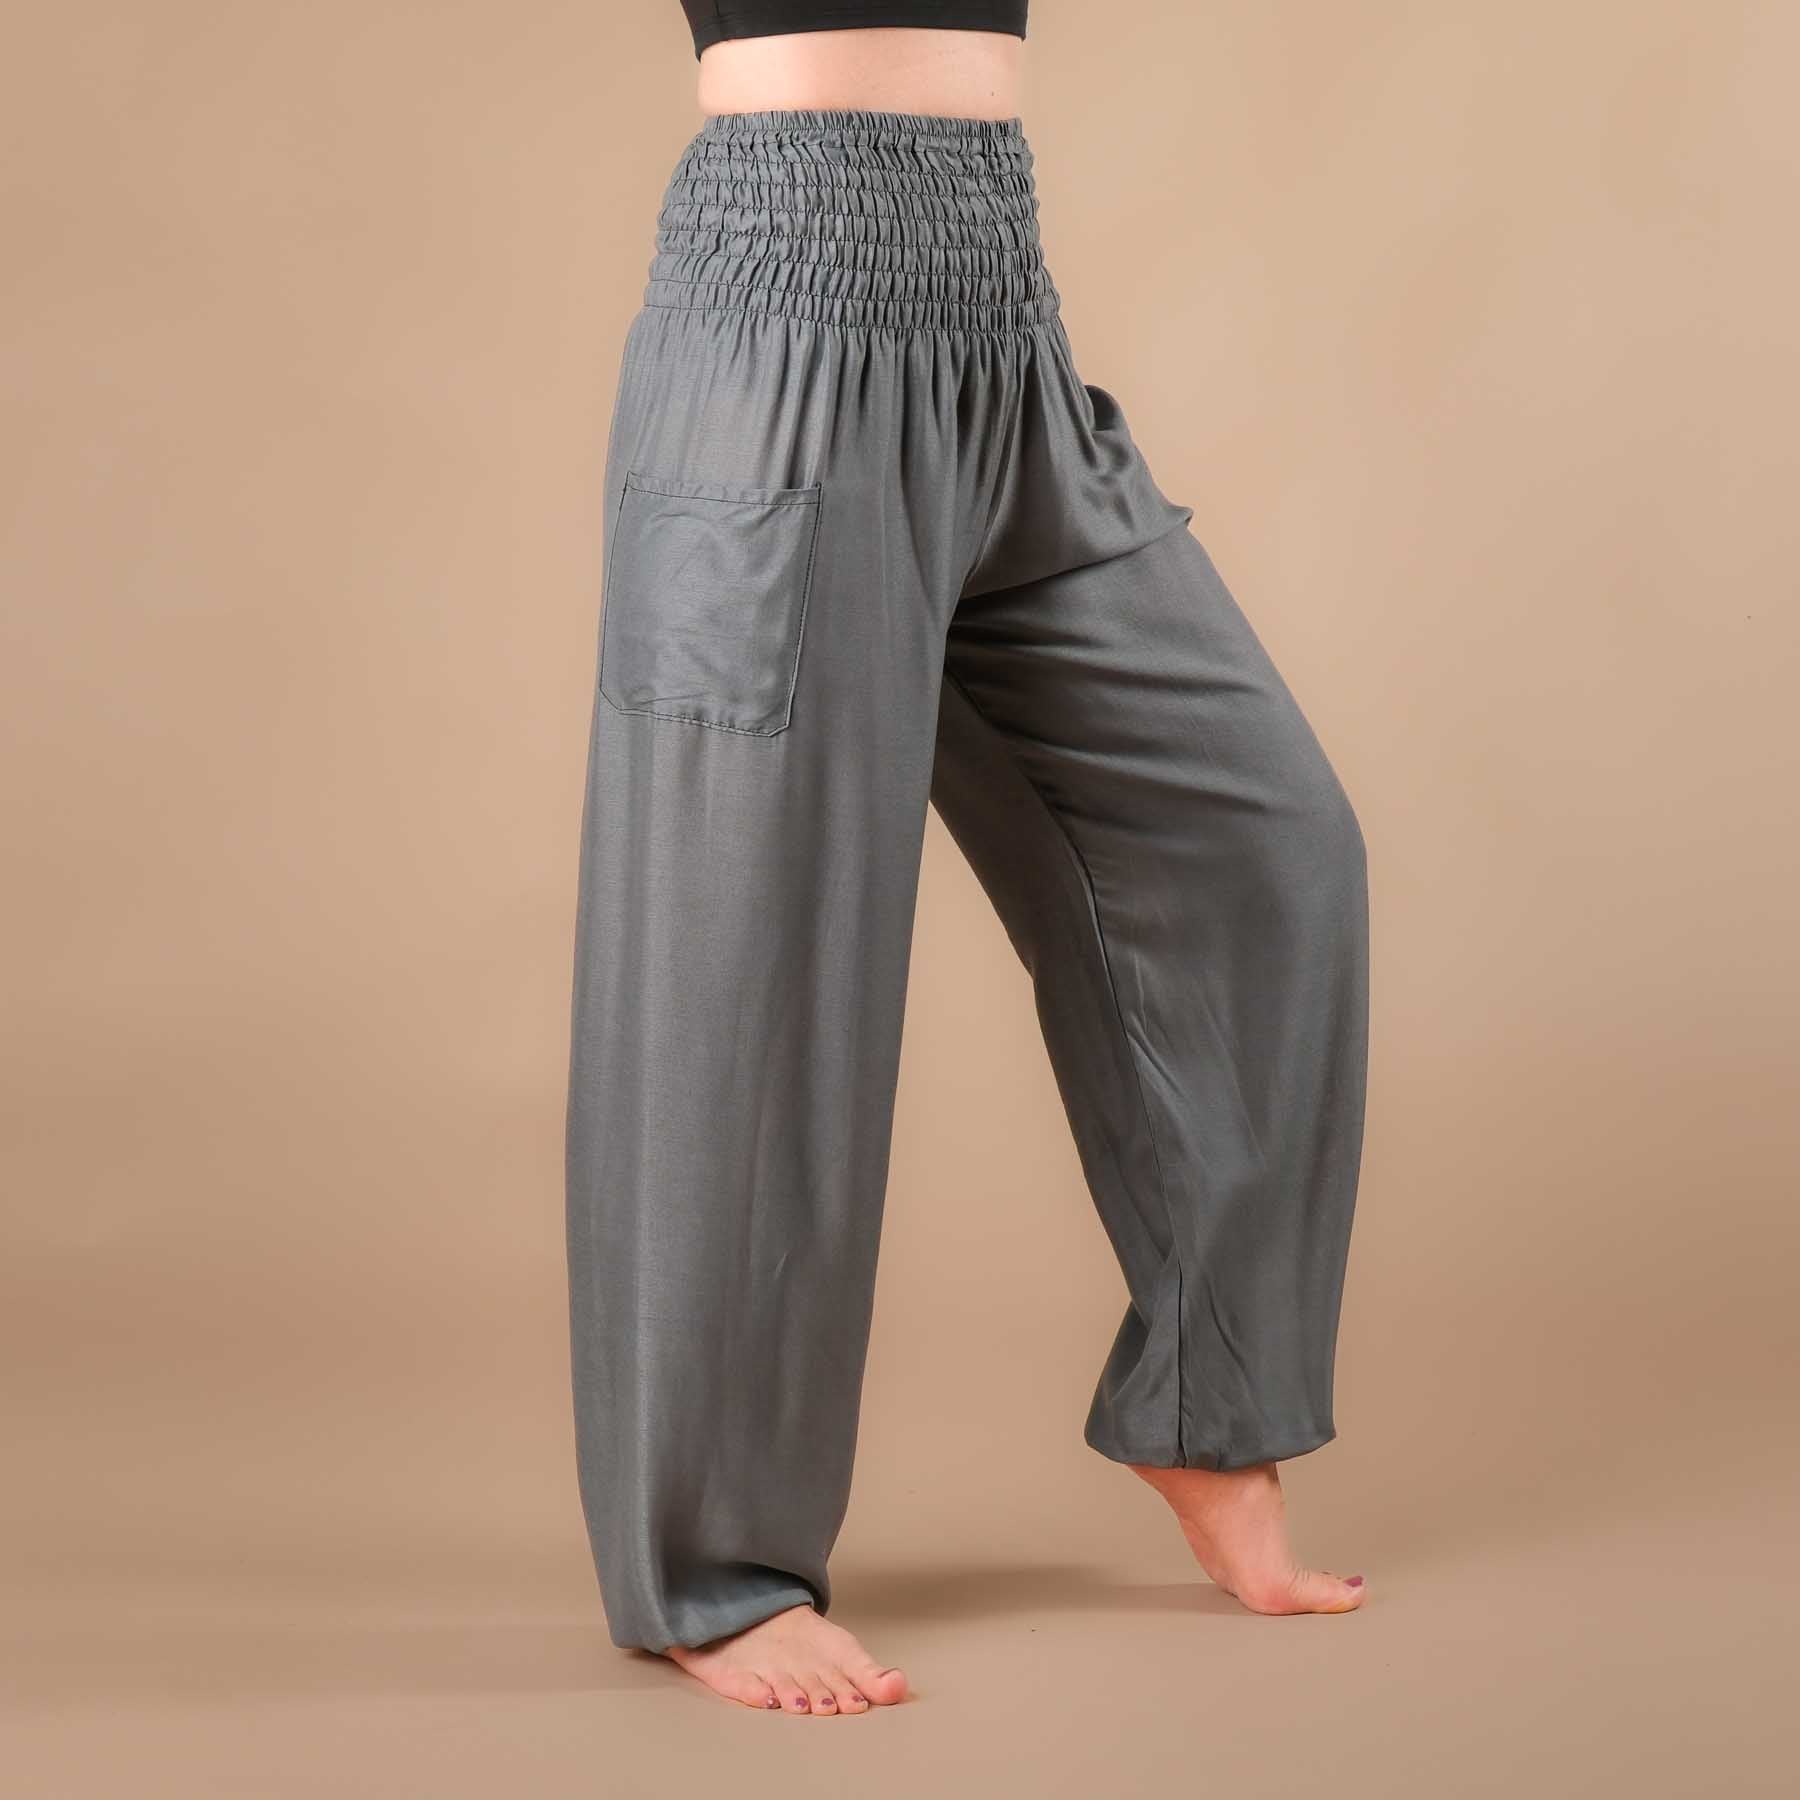 Pantaloni harem yoga uni grey